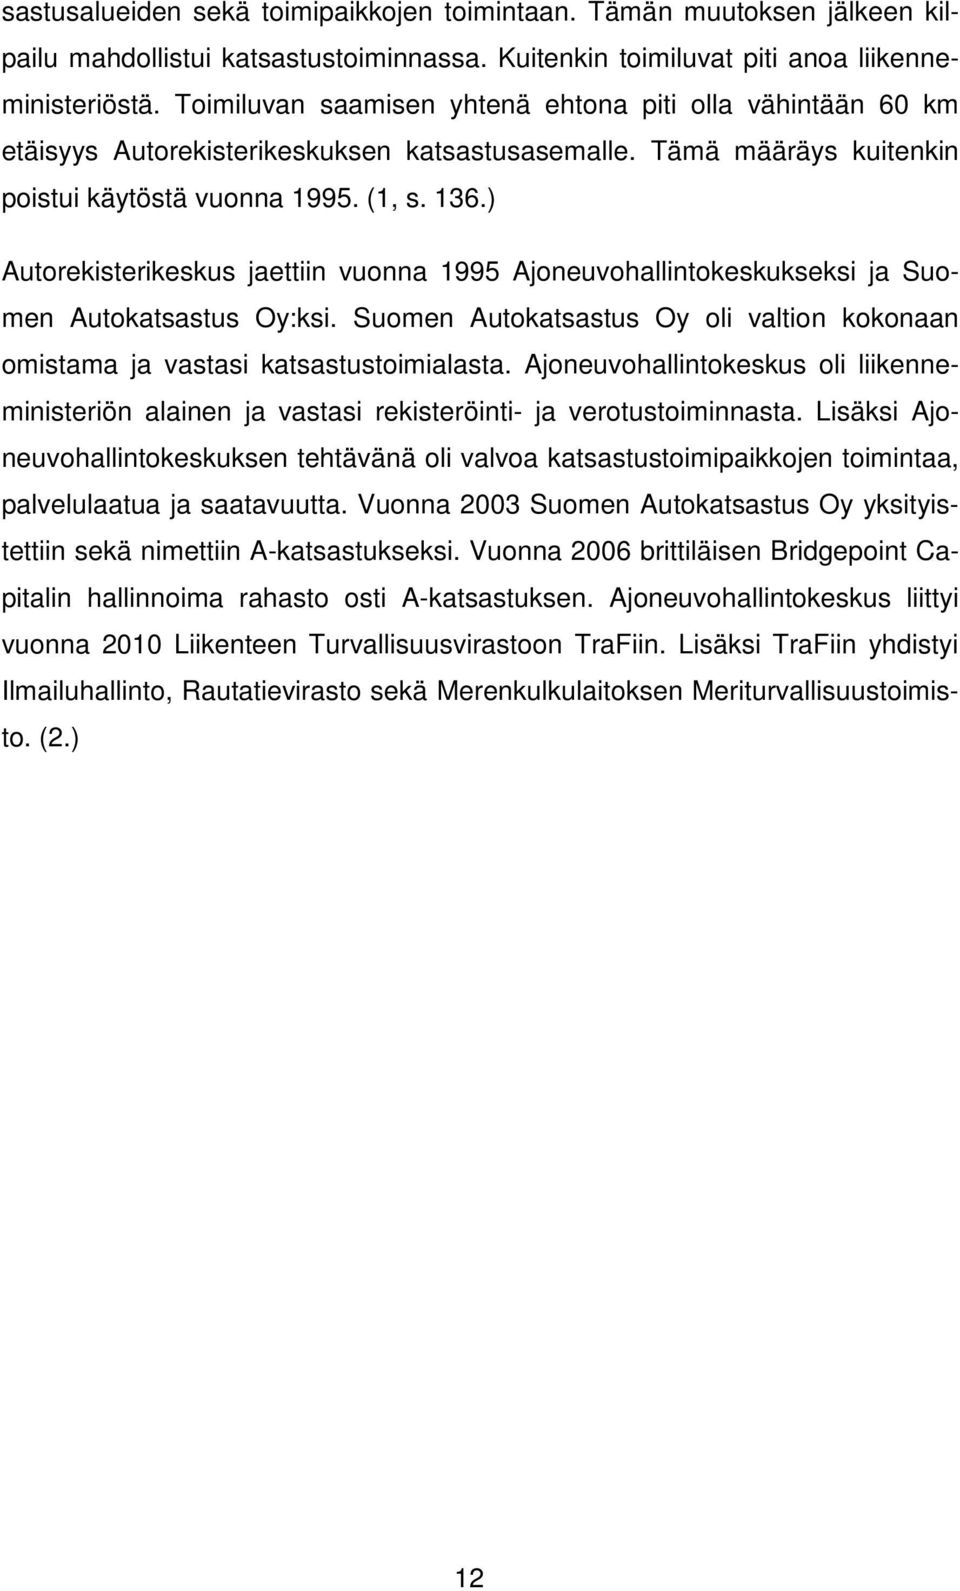 ) Autorekisterikeskus jaettiin vuonna 1995 Ajoneuvohallintokeskukseksi ja Suomen Autokatsastus Oy:ksi. Suomen Autokatsastus Oy oli valtion kokonaan omistama ja vastasi katsastustoimialasta.